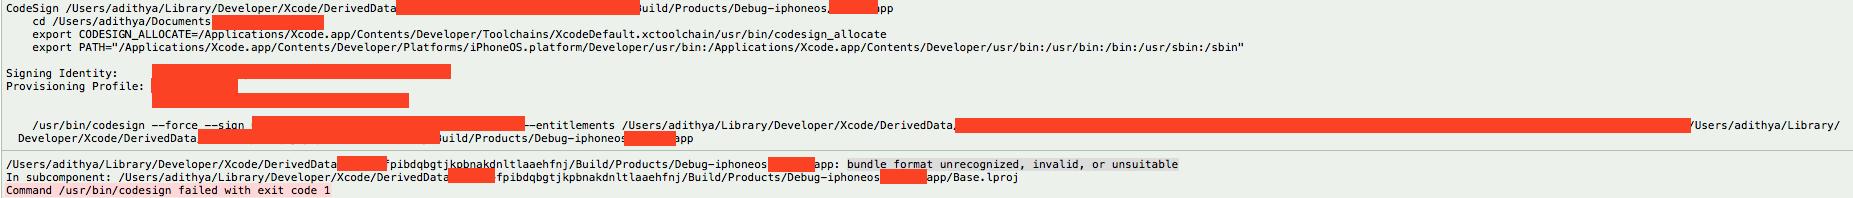 xcode error object formato de documento no reconocido inválido o inadecuado